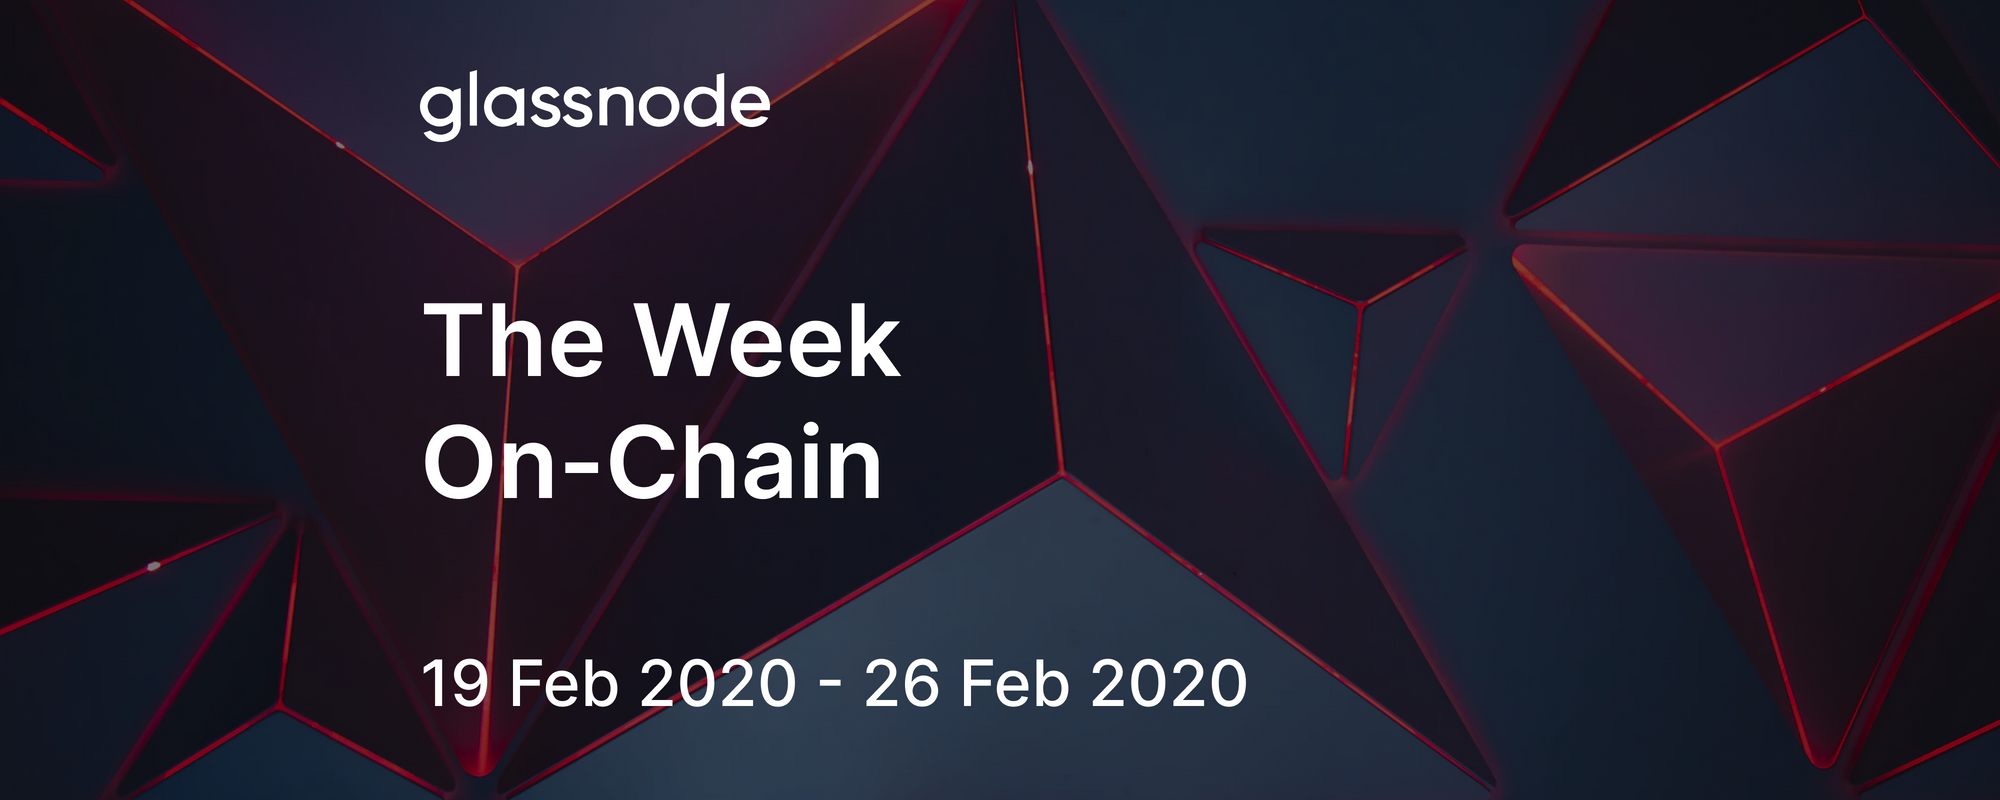 The Week On-Chain (19 Feb 2020 - 26 Feb 2020)